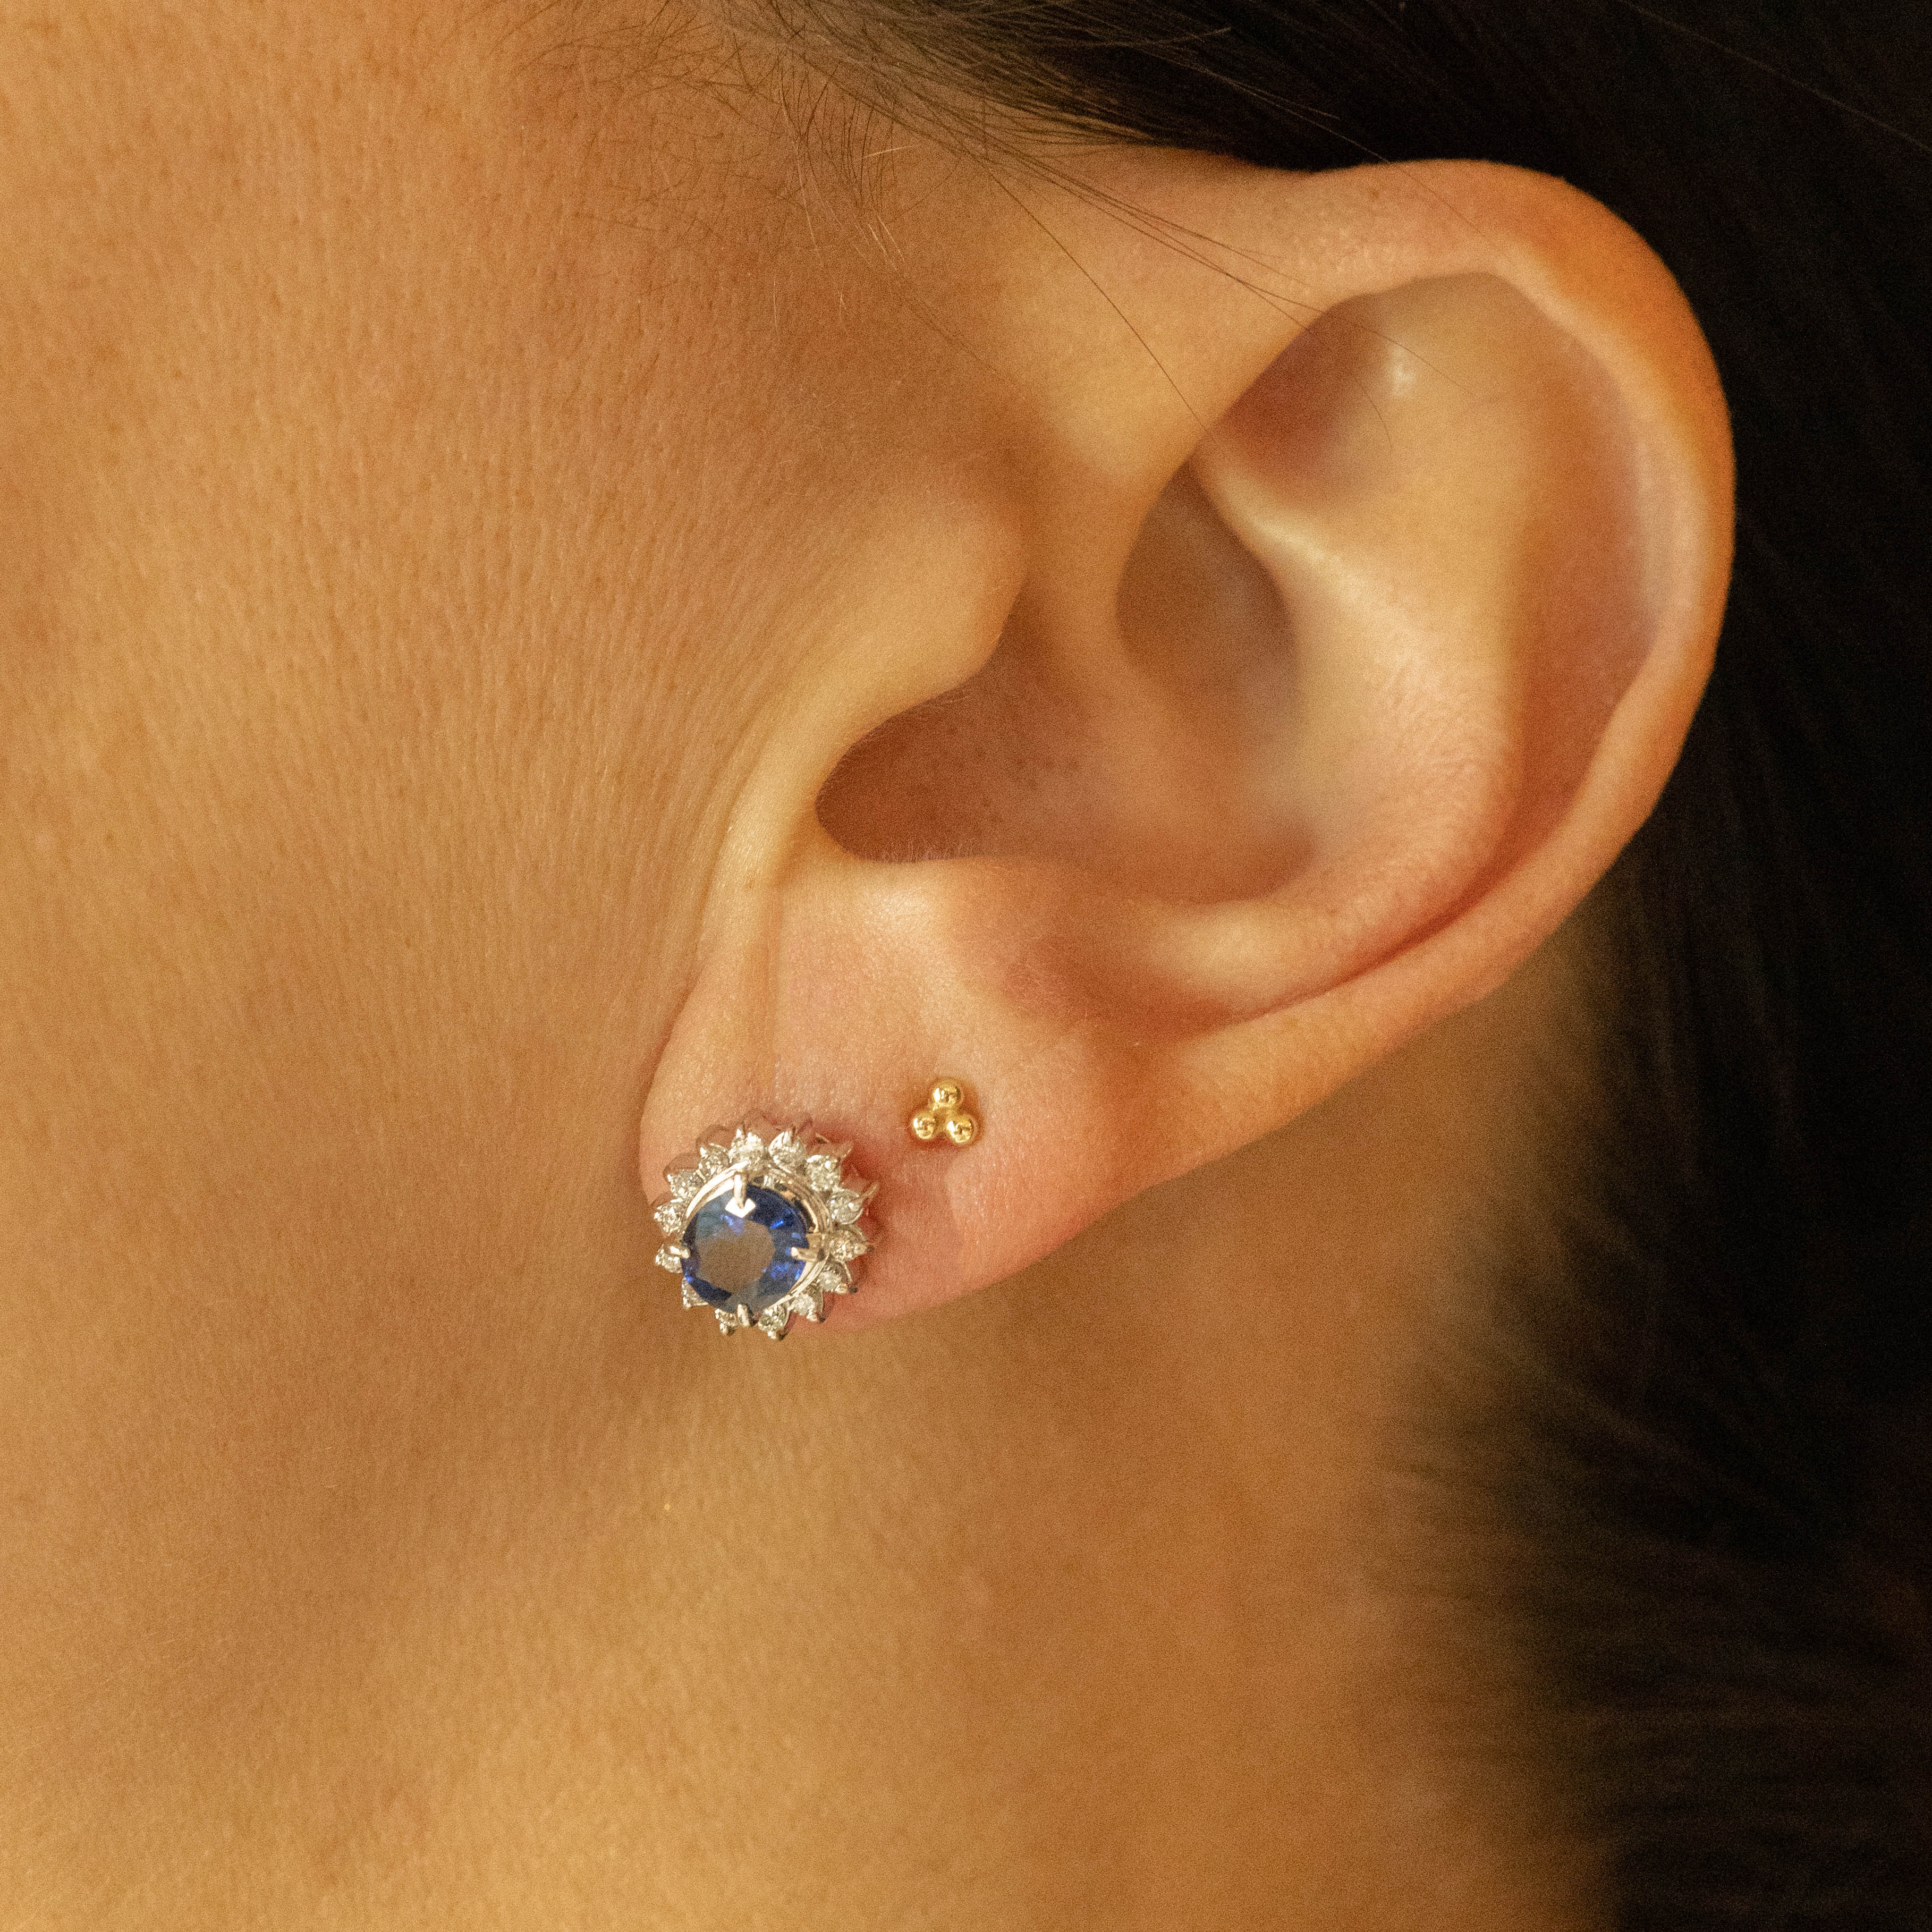 Royal Halo Design White Fire Opal Stud Earrings, 68 Oval Cabochon Opal  Earrings, October Birthstone Gift, Bridal Earrings, Cluster Earrings - Etsy